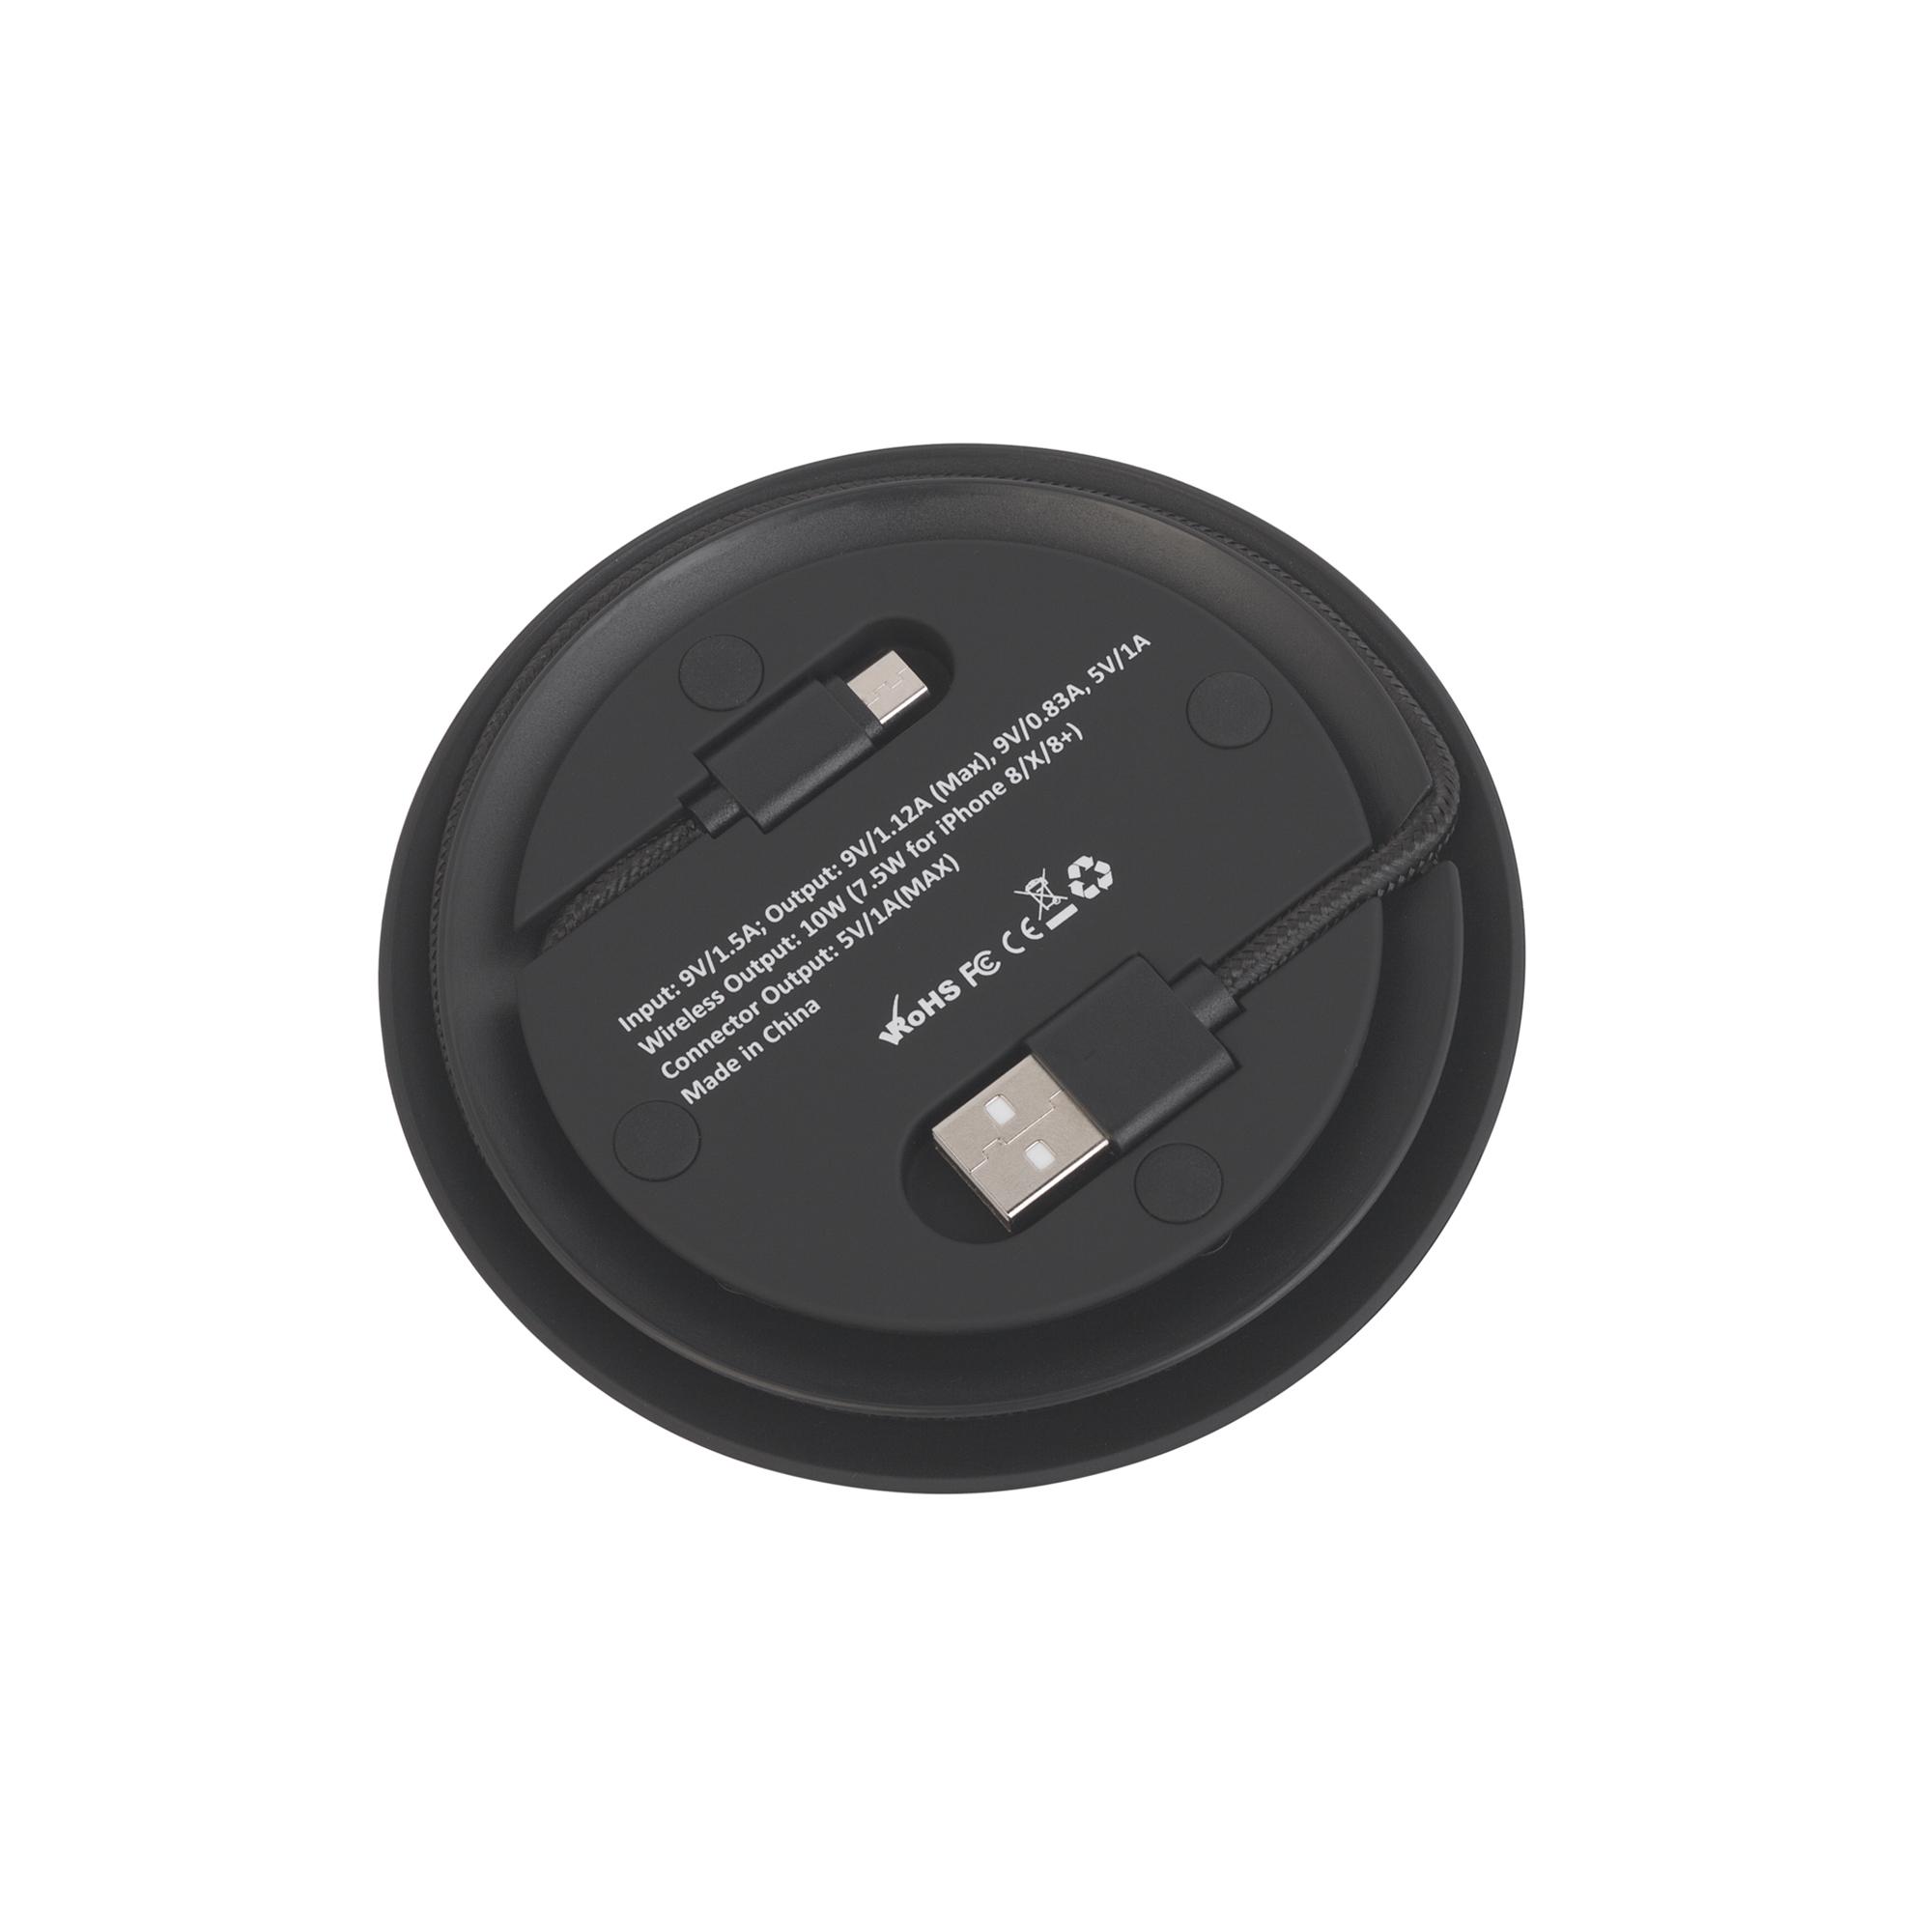 Настольное беспроводное зарядное устройство "Light SOFTTOUCH" с подсветкой логотипа, цвет черный, фото 3